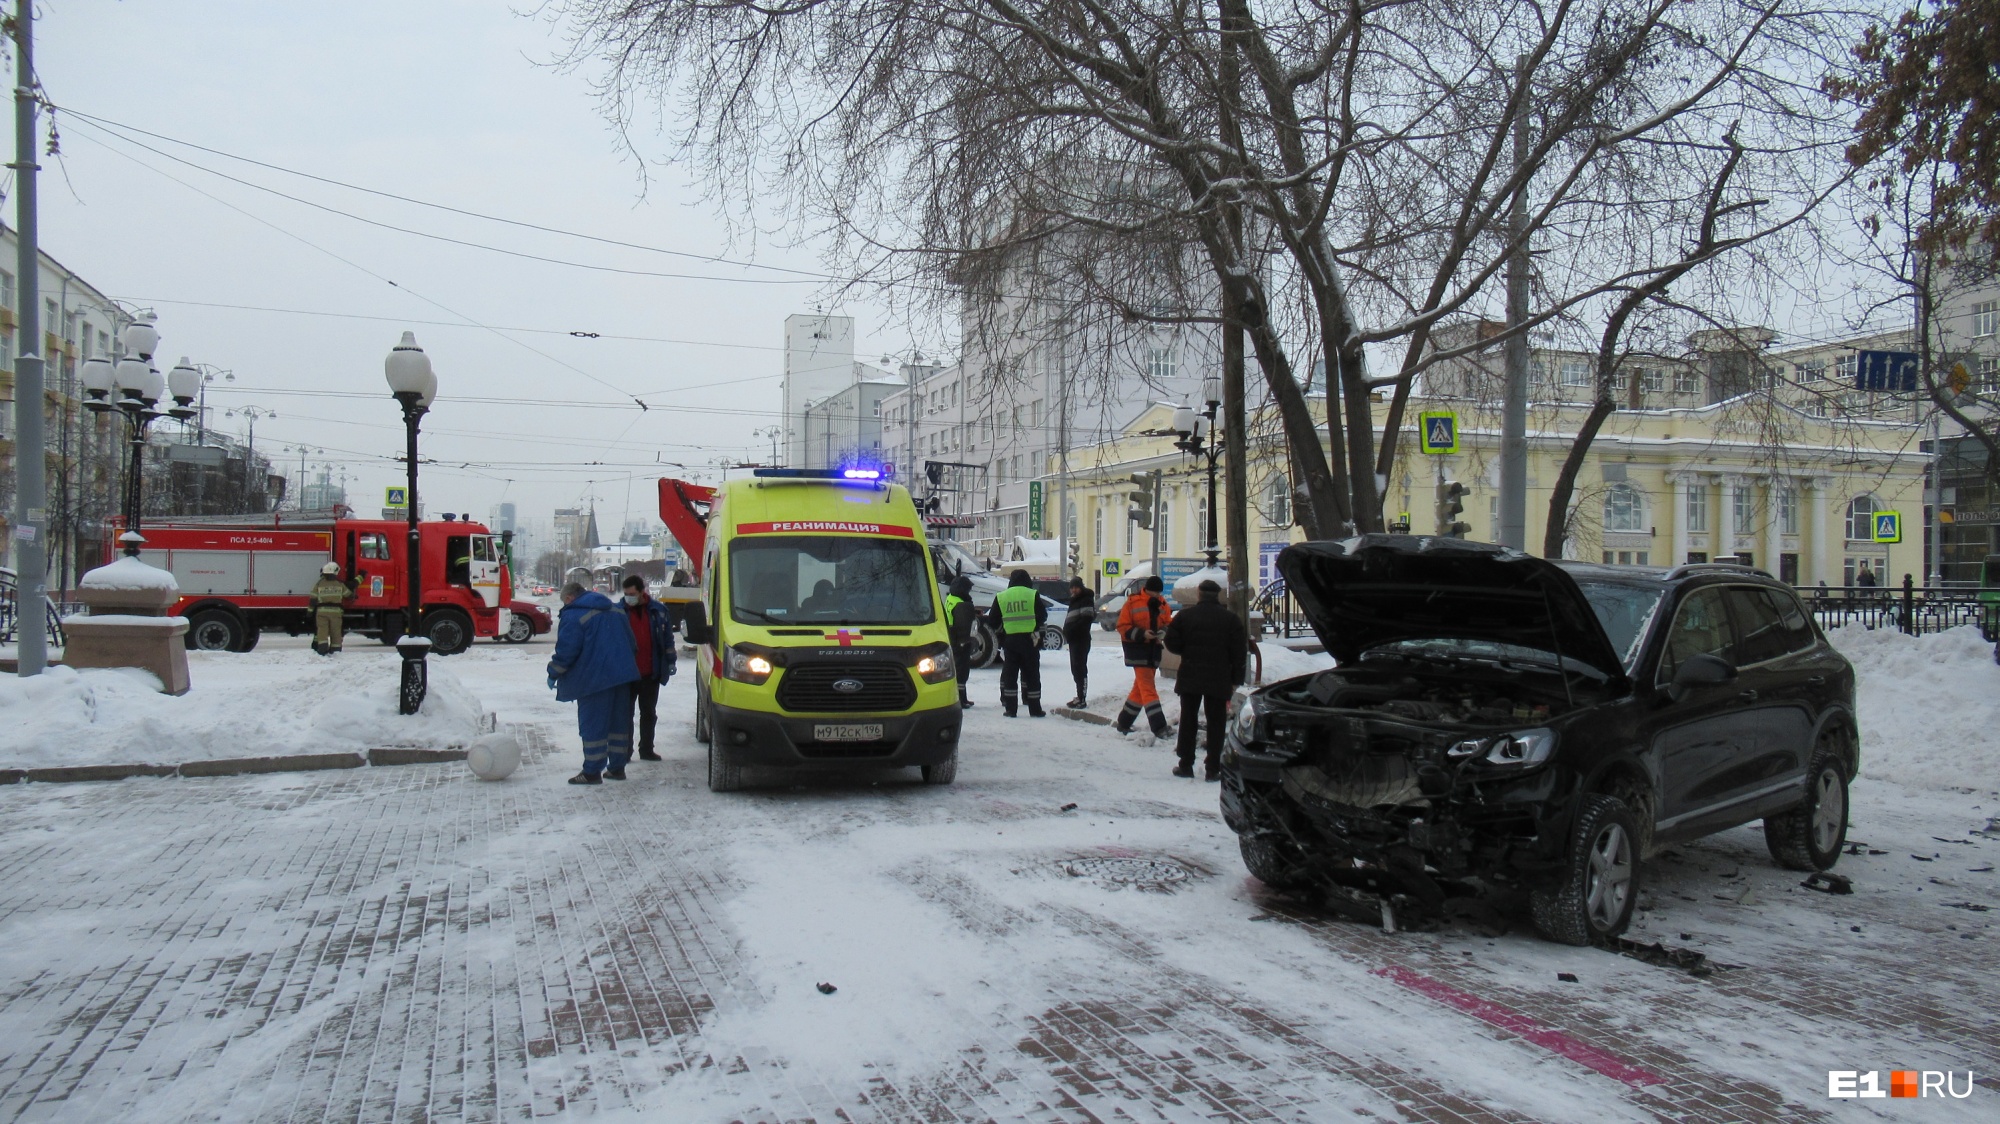 Пожилому водителю стало плохо: в центре Екатеринбурга внедорожник снес светофор и вылетел на тротуар